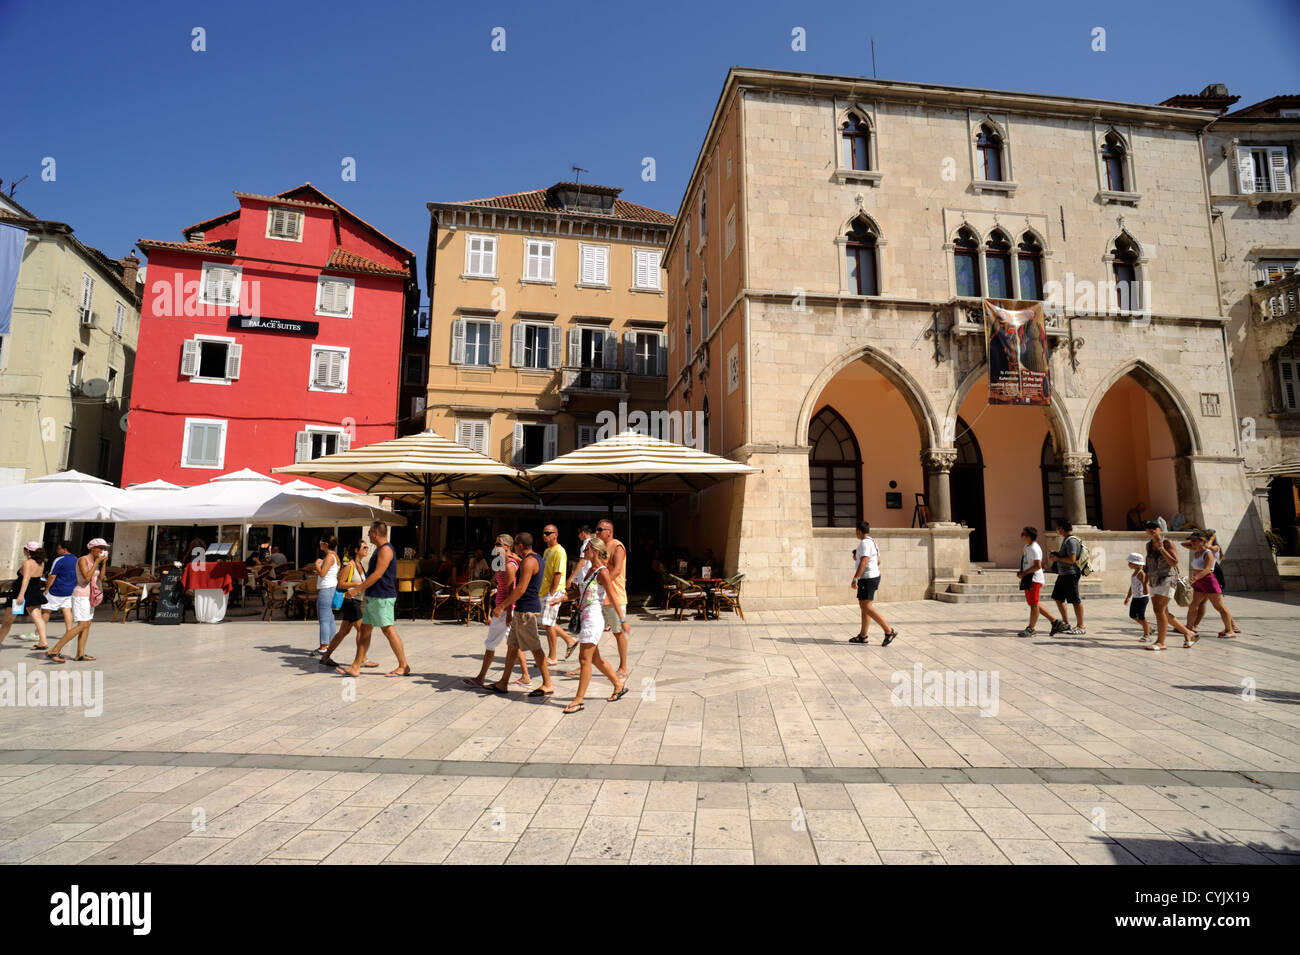 croatia, split, narodni trg, old town hall square Stock Photo